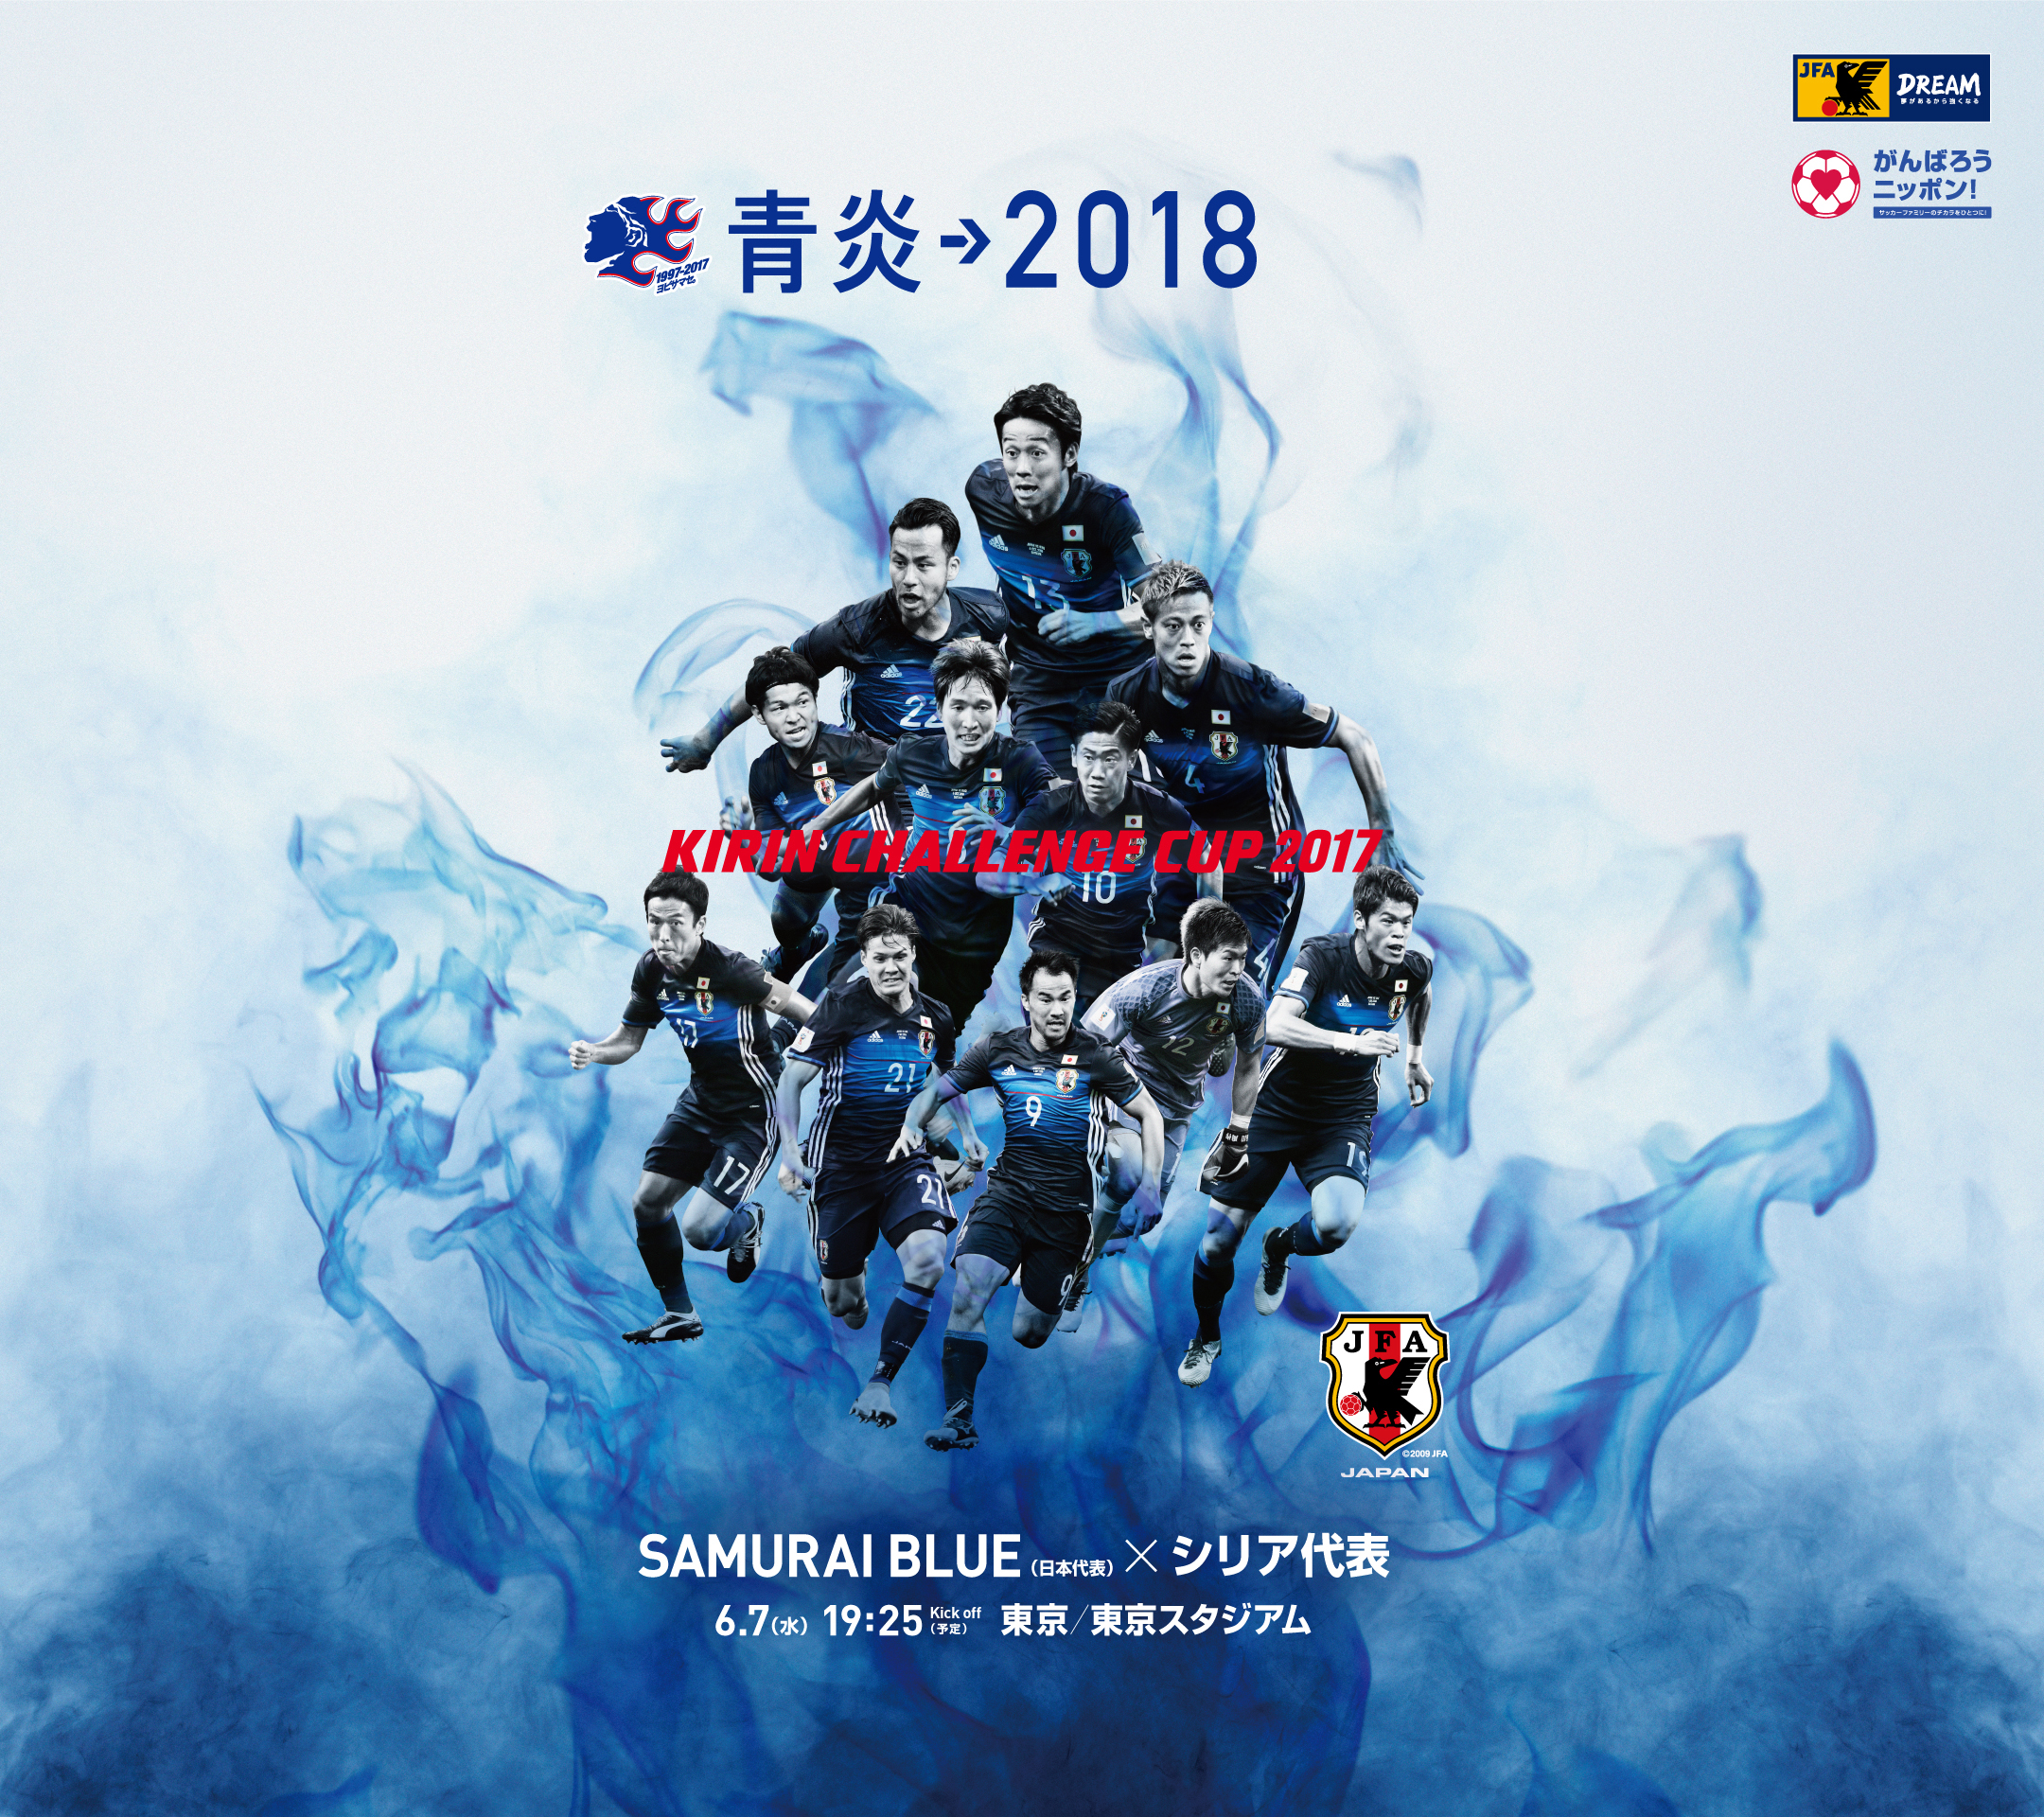 壁紙 ポスターダウンロード キリンチャレンジカップ17 6 7 Samurai Blue 日本代表 Jfa 日本サッカー協会